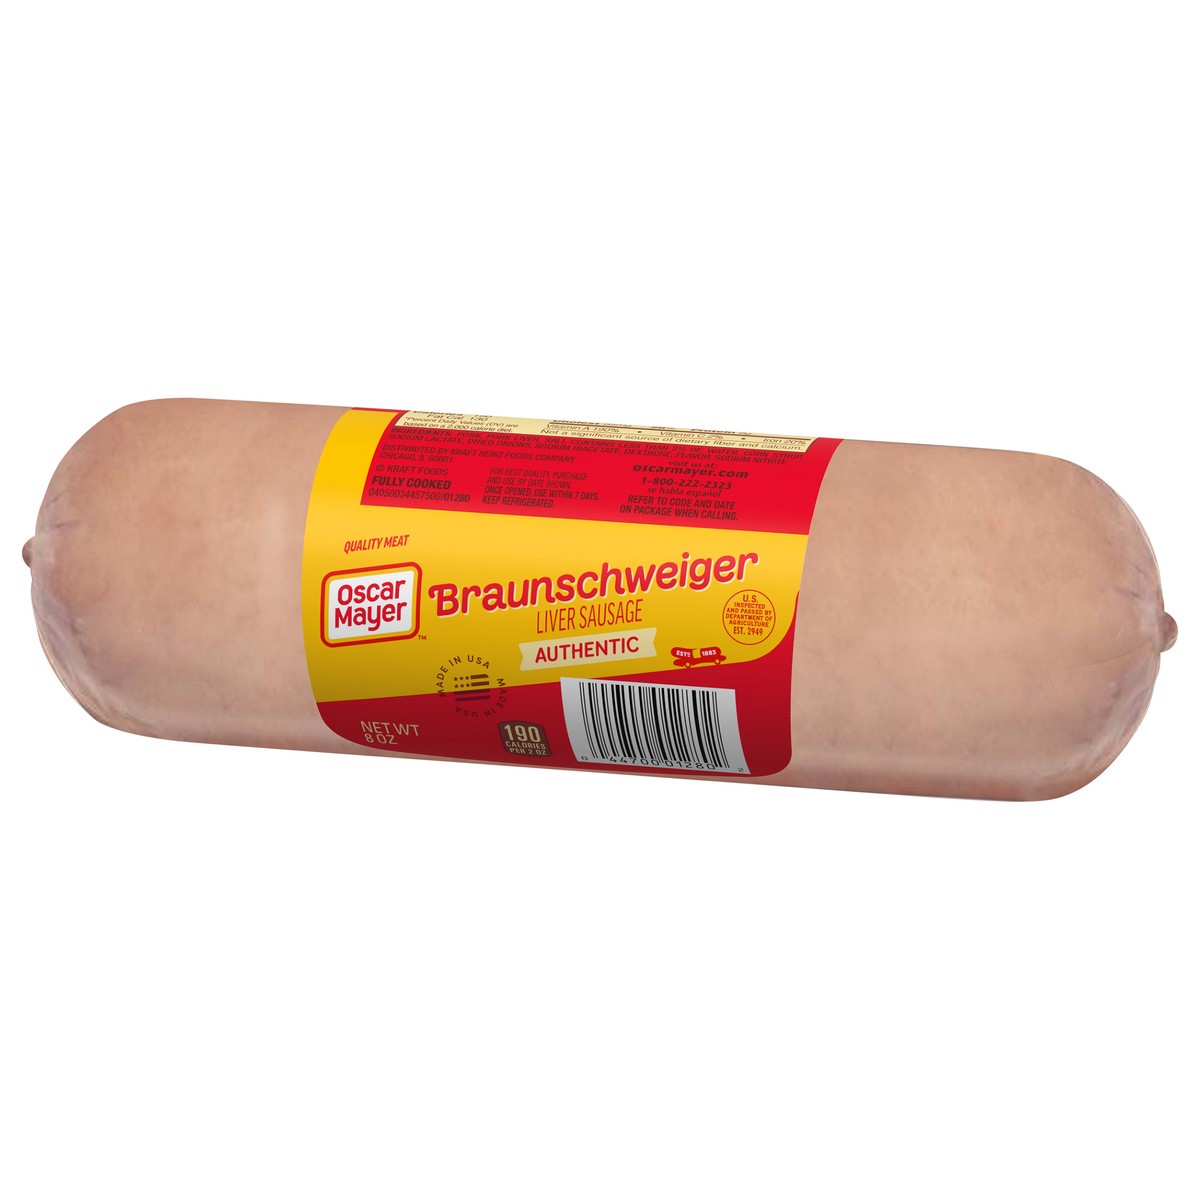 slide 8 of 9, Oscar Mayer Braunschweiger Liver Sausage, 8 oz. Pack, 8 oz